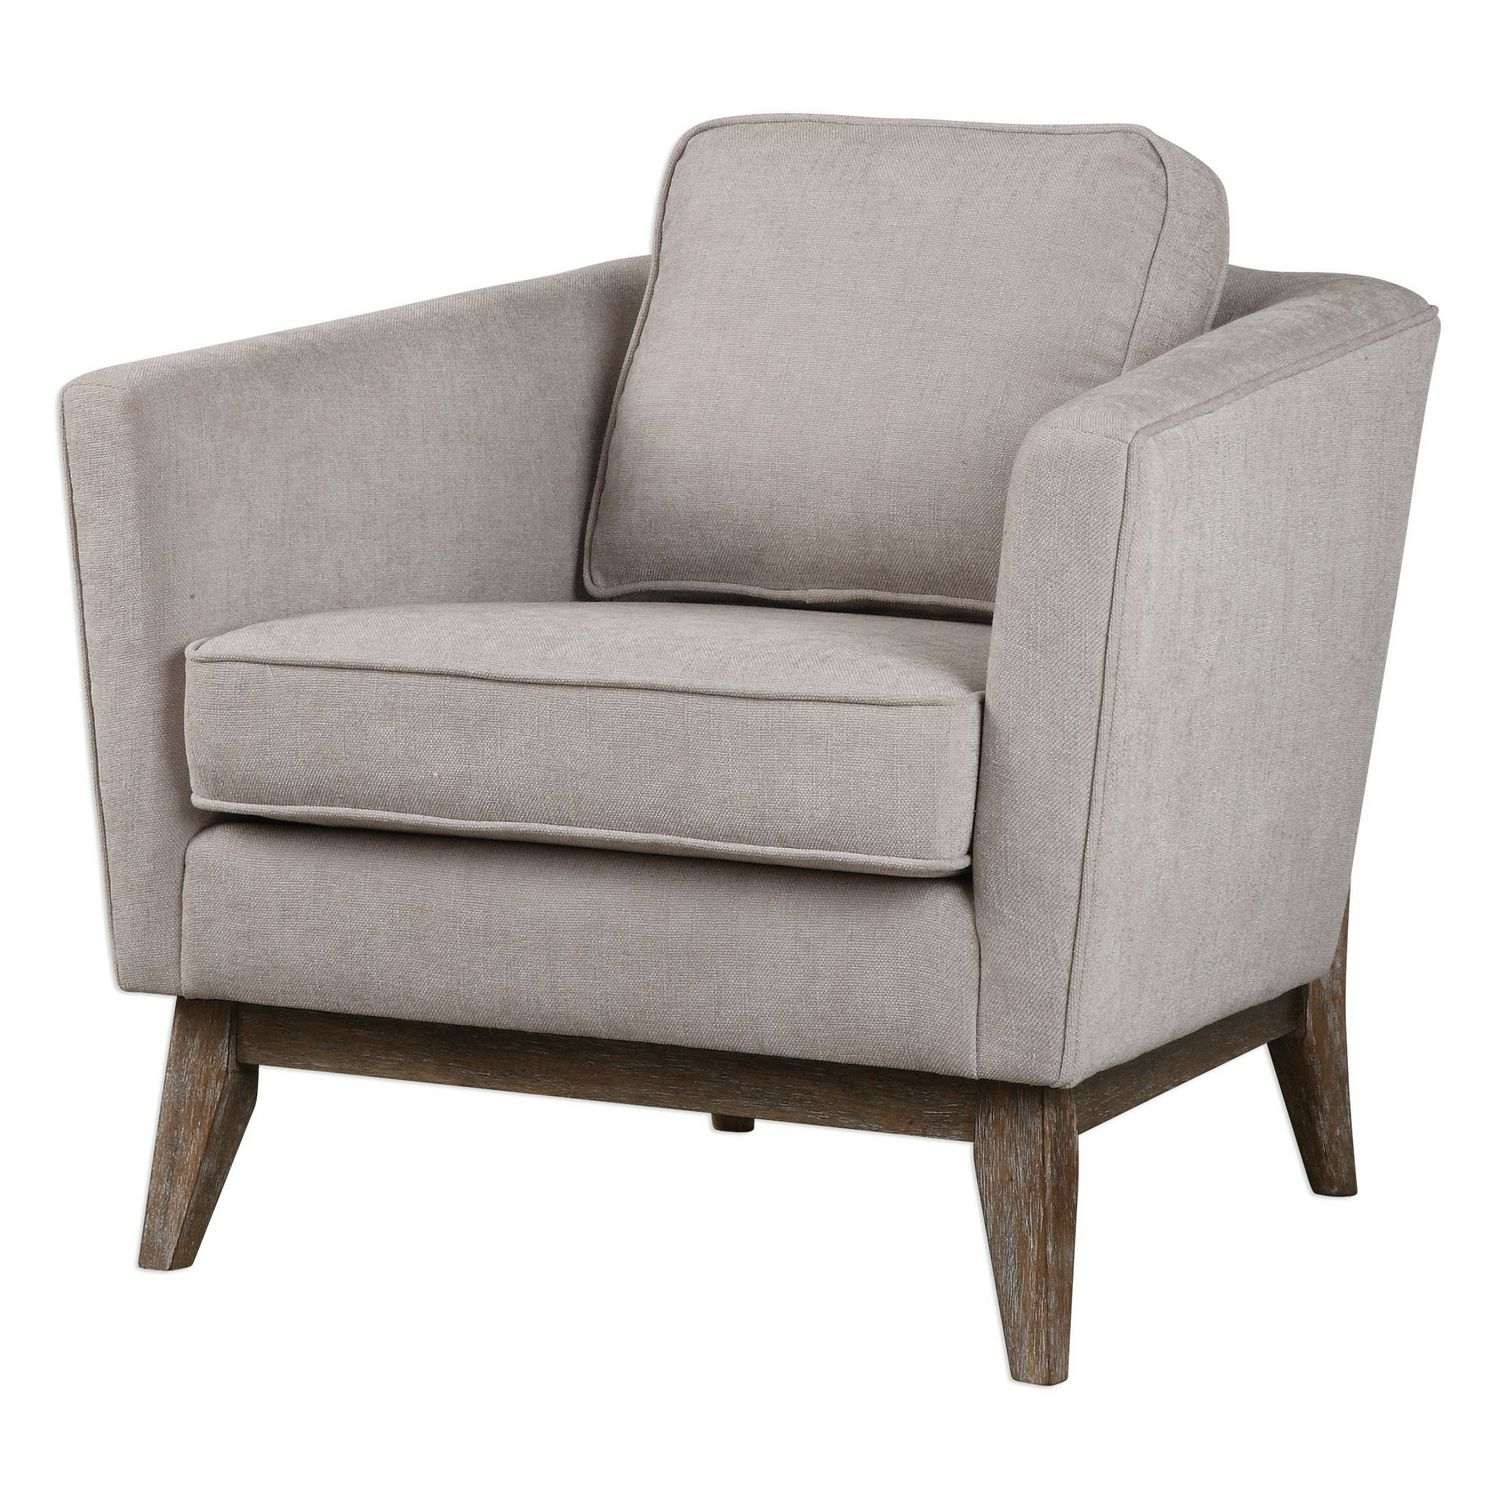 Uttermost Varner Accent Chair - Beige Linen